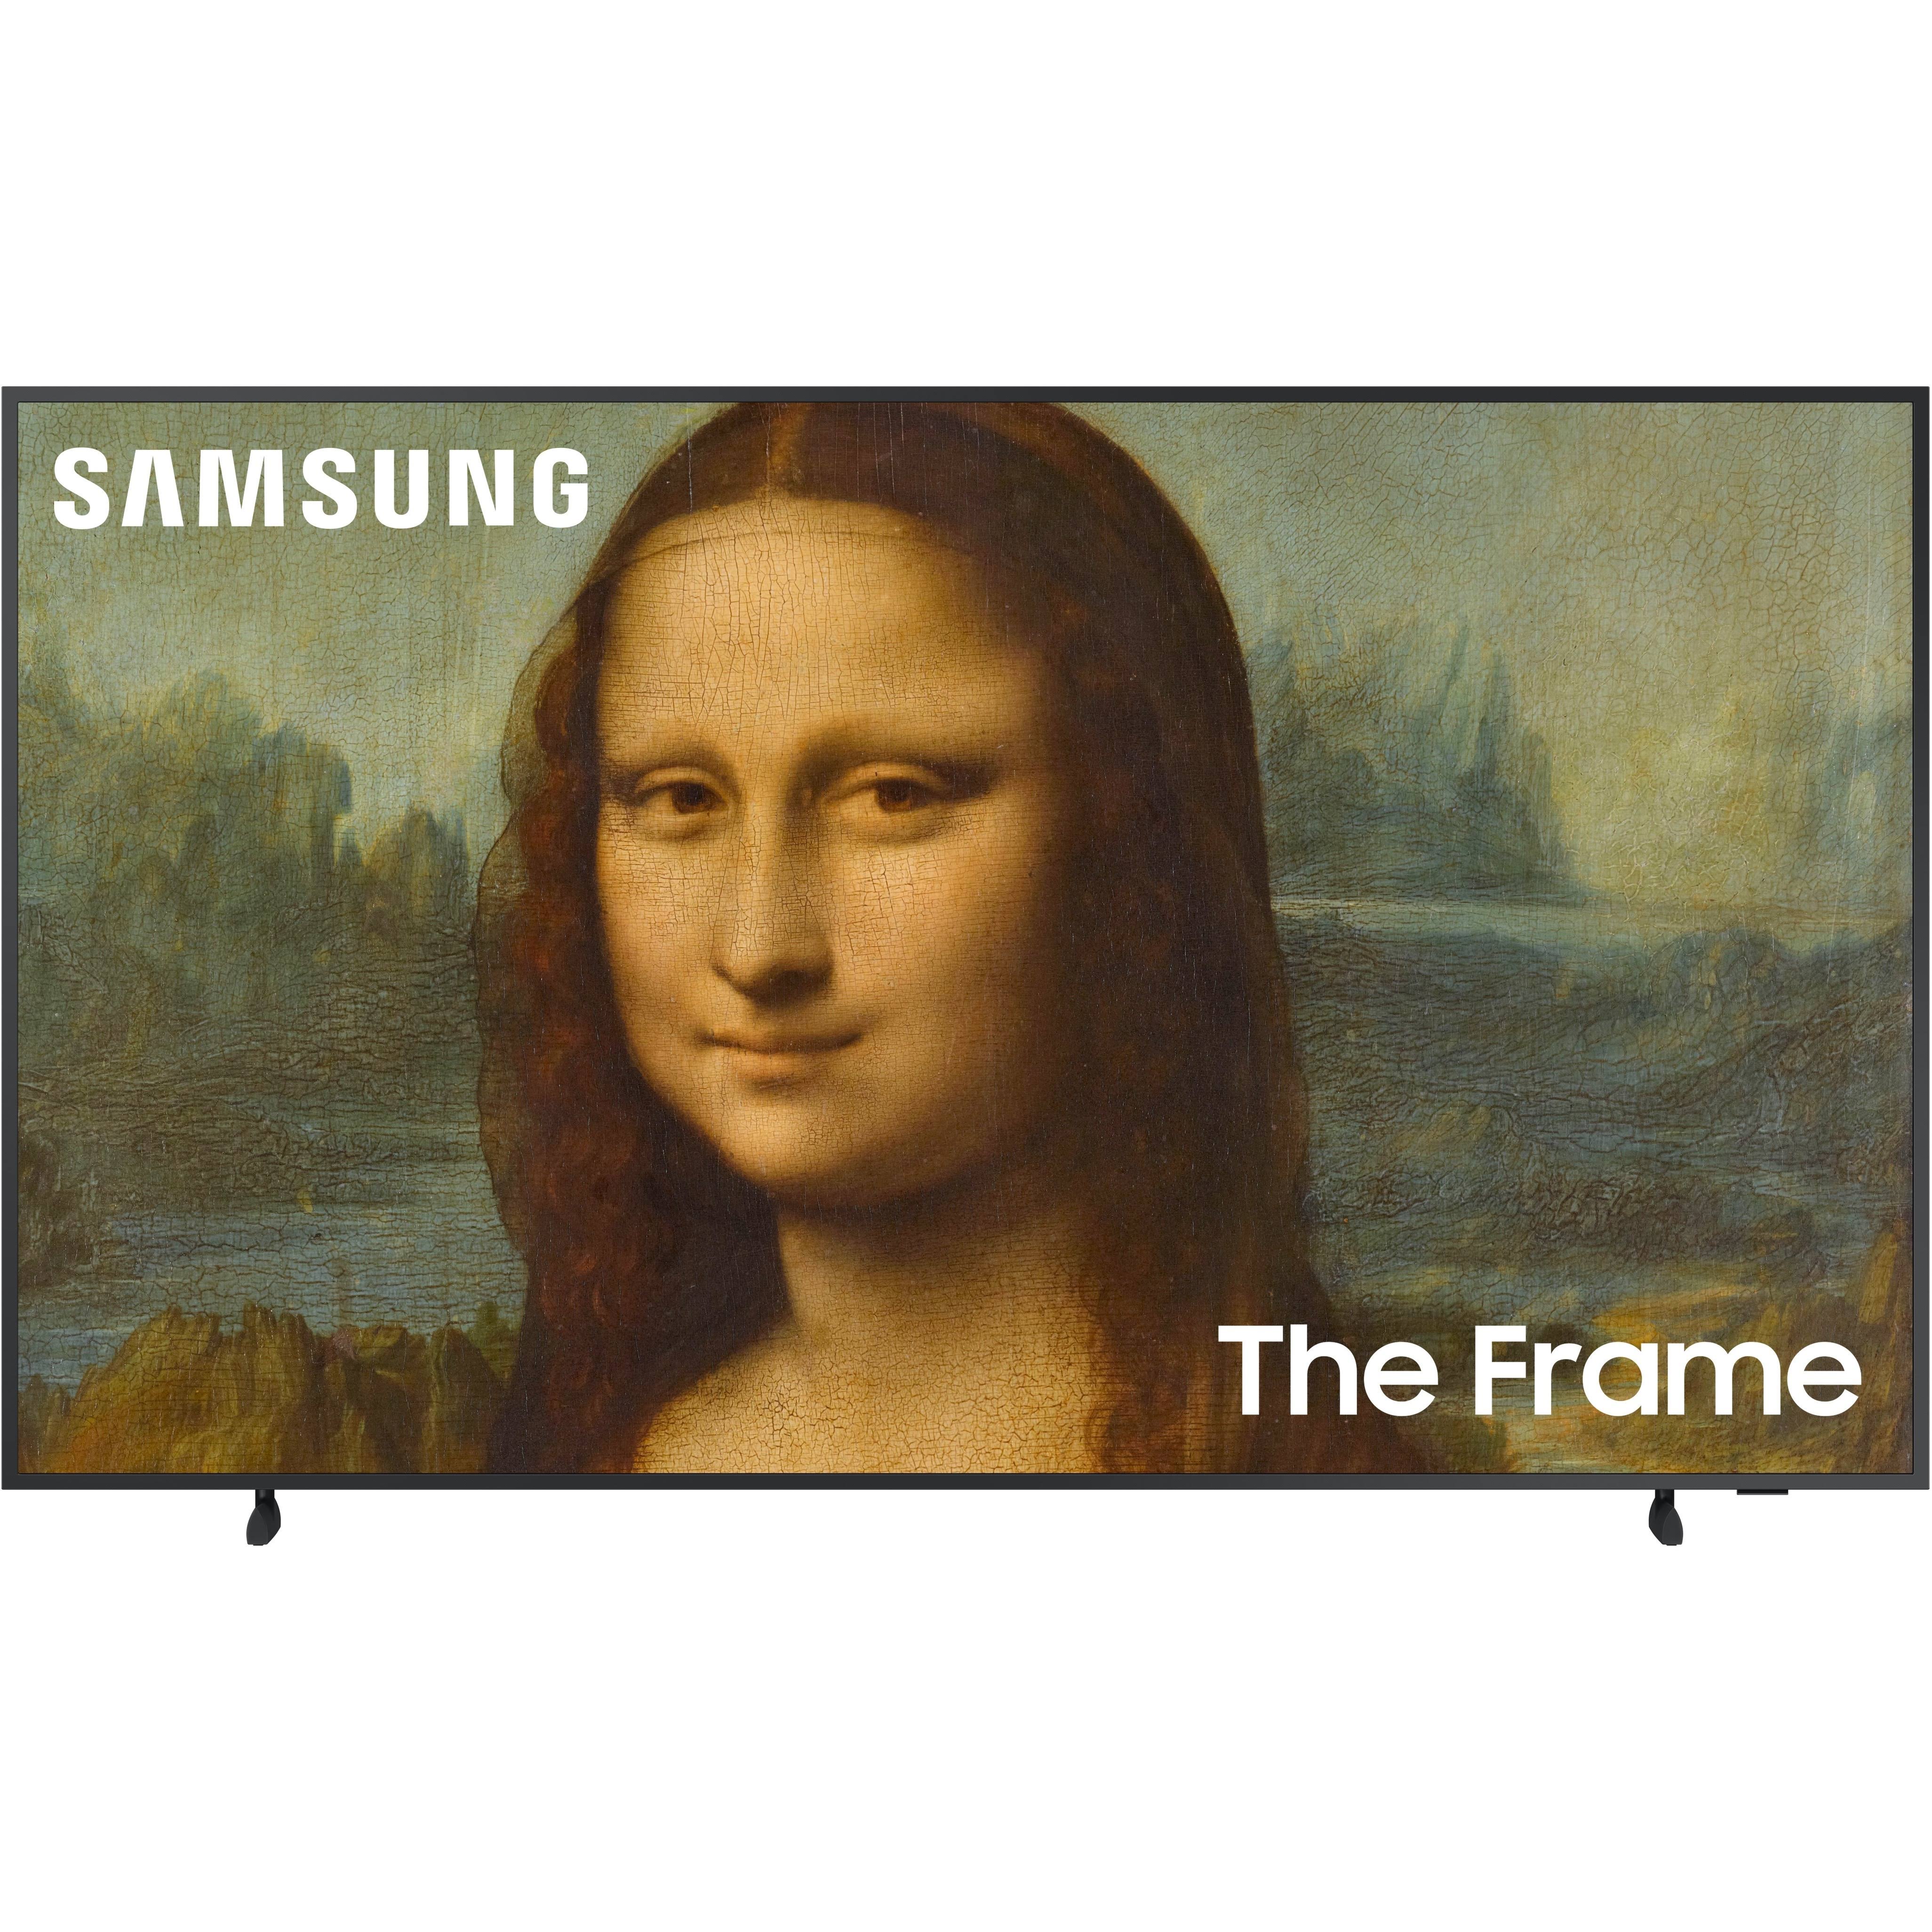 Samsung 50" The Frame QLED 4K Smart TV